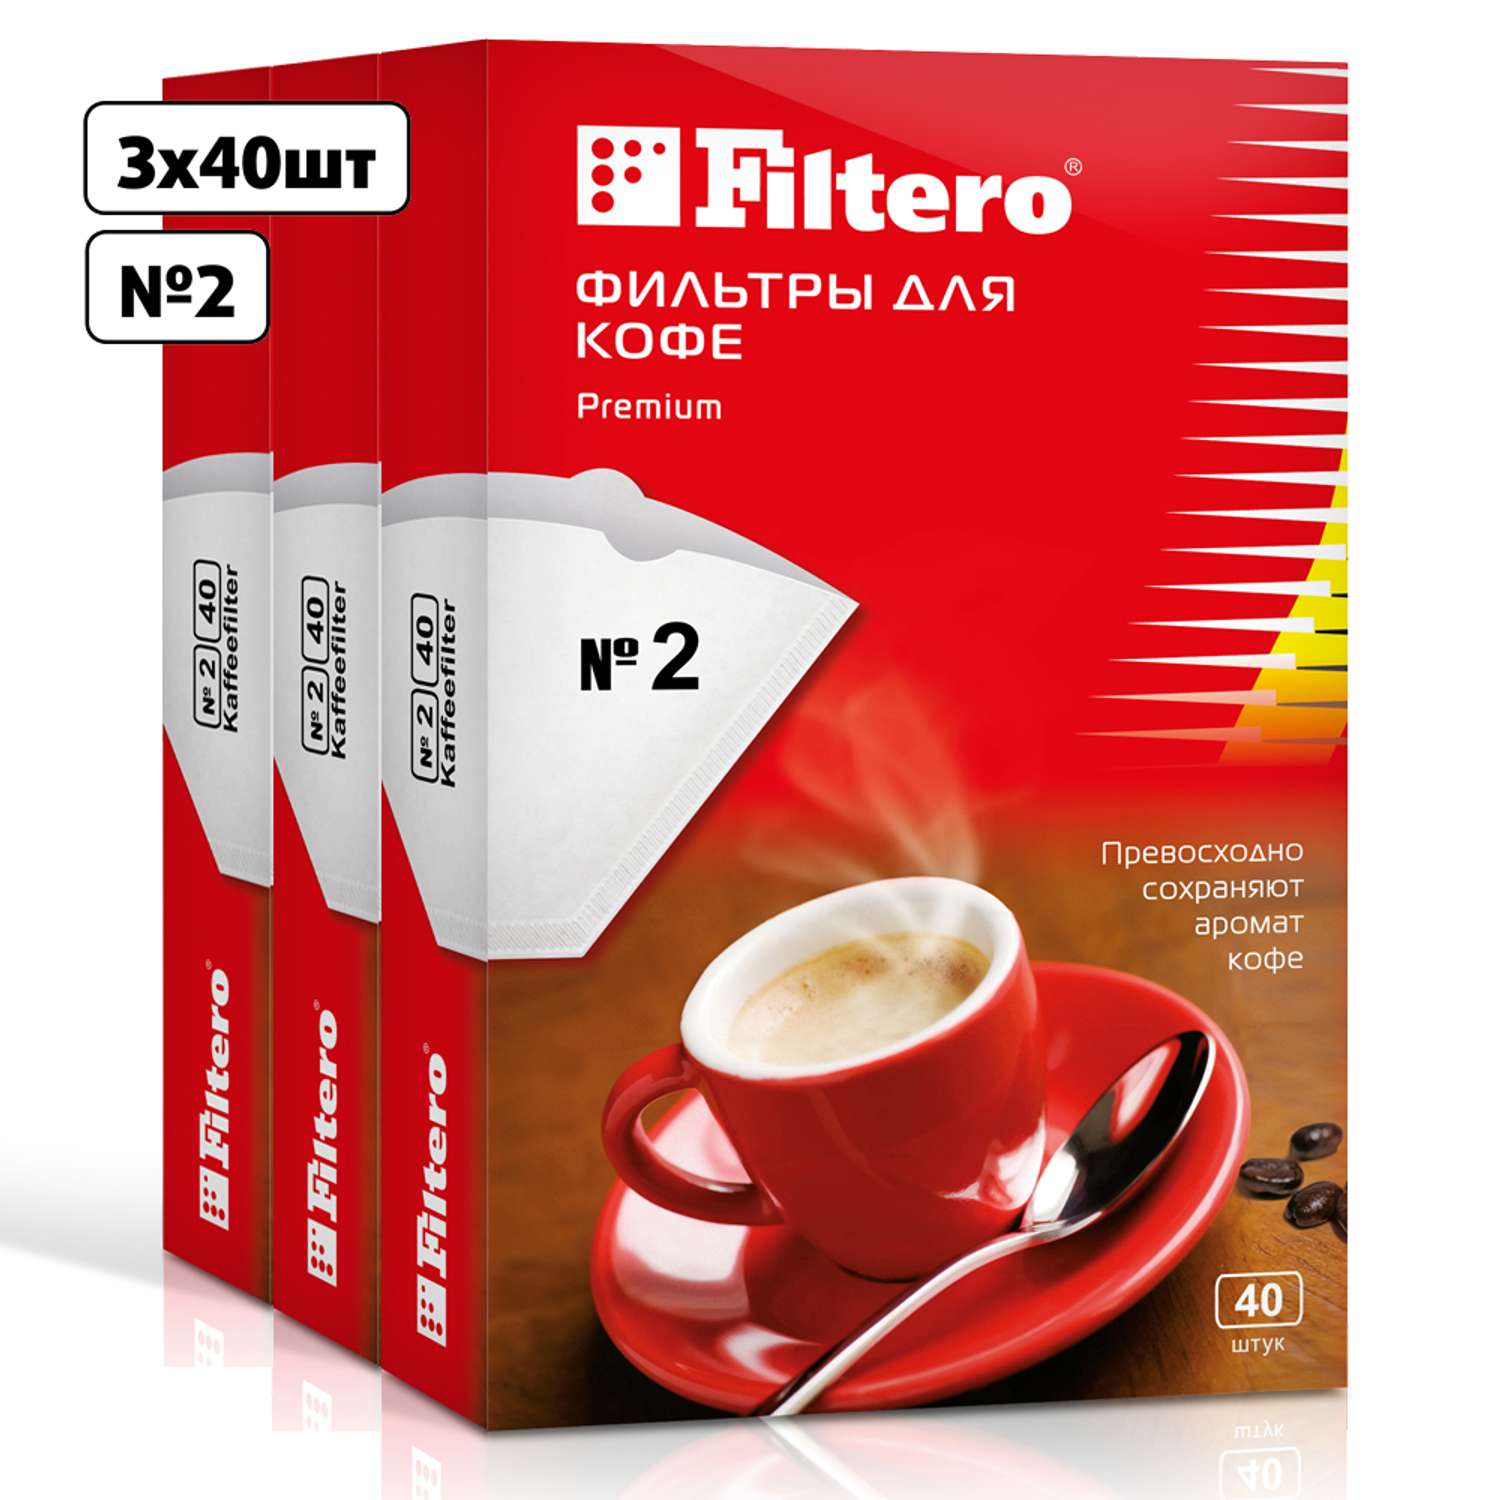 Комплект фильтров Filtero для кофеварки №2/120шт белые Premium - фото 1